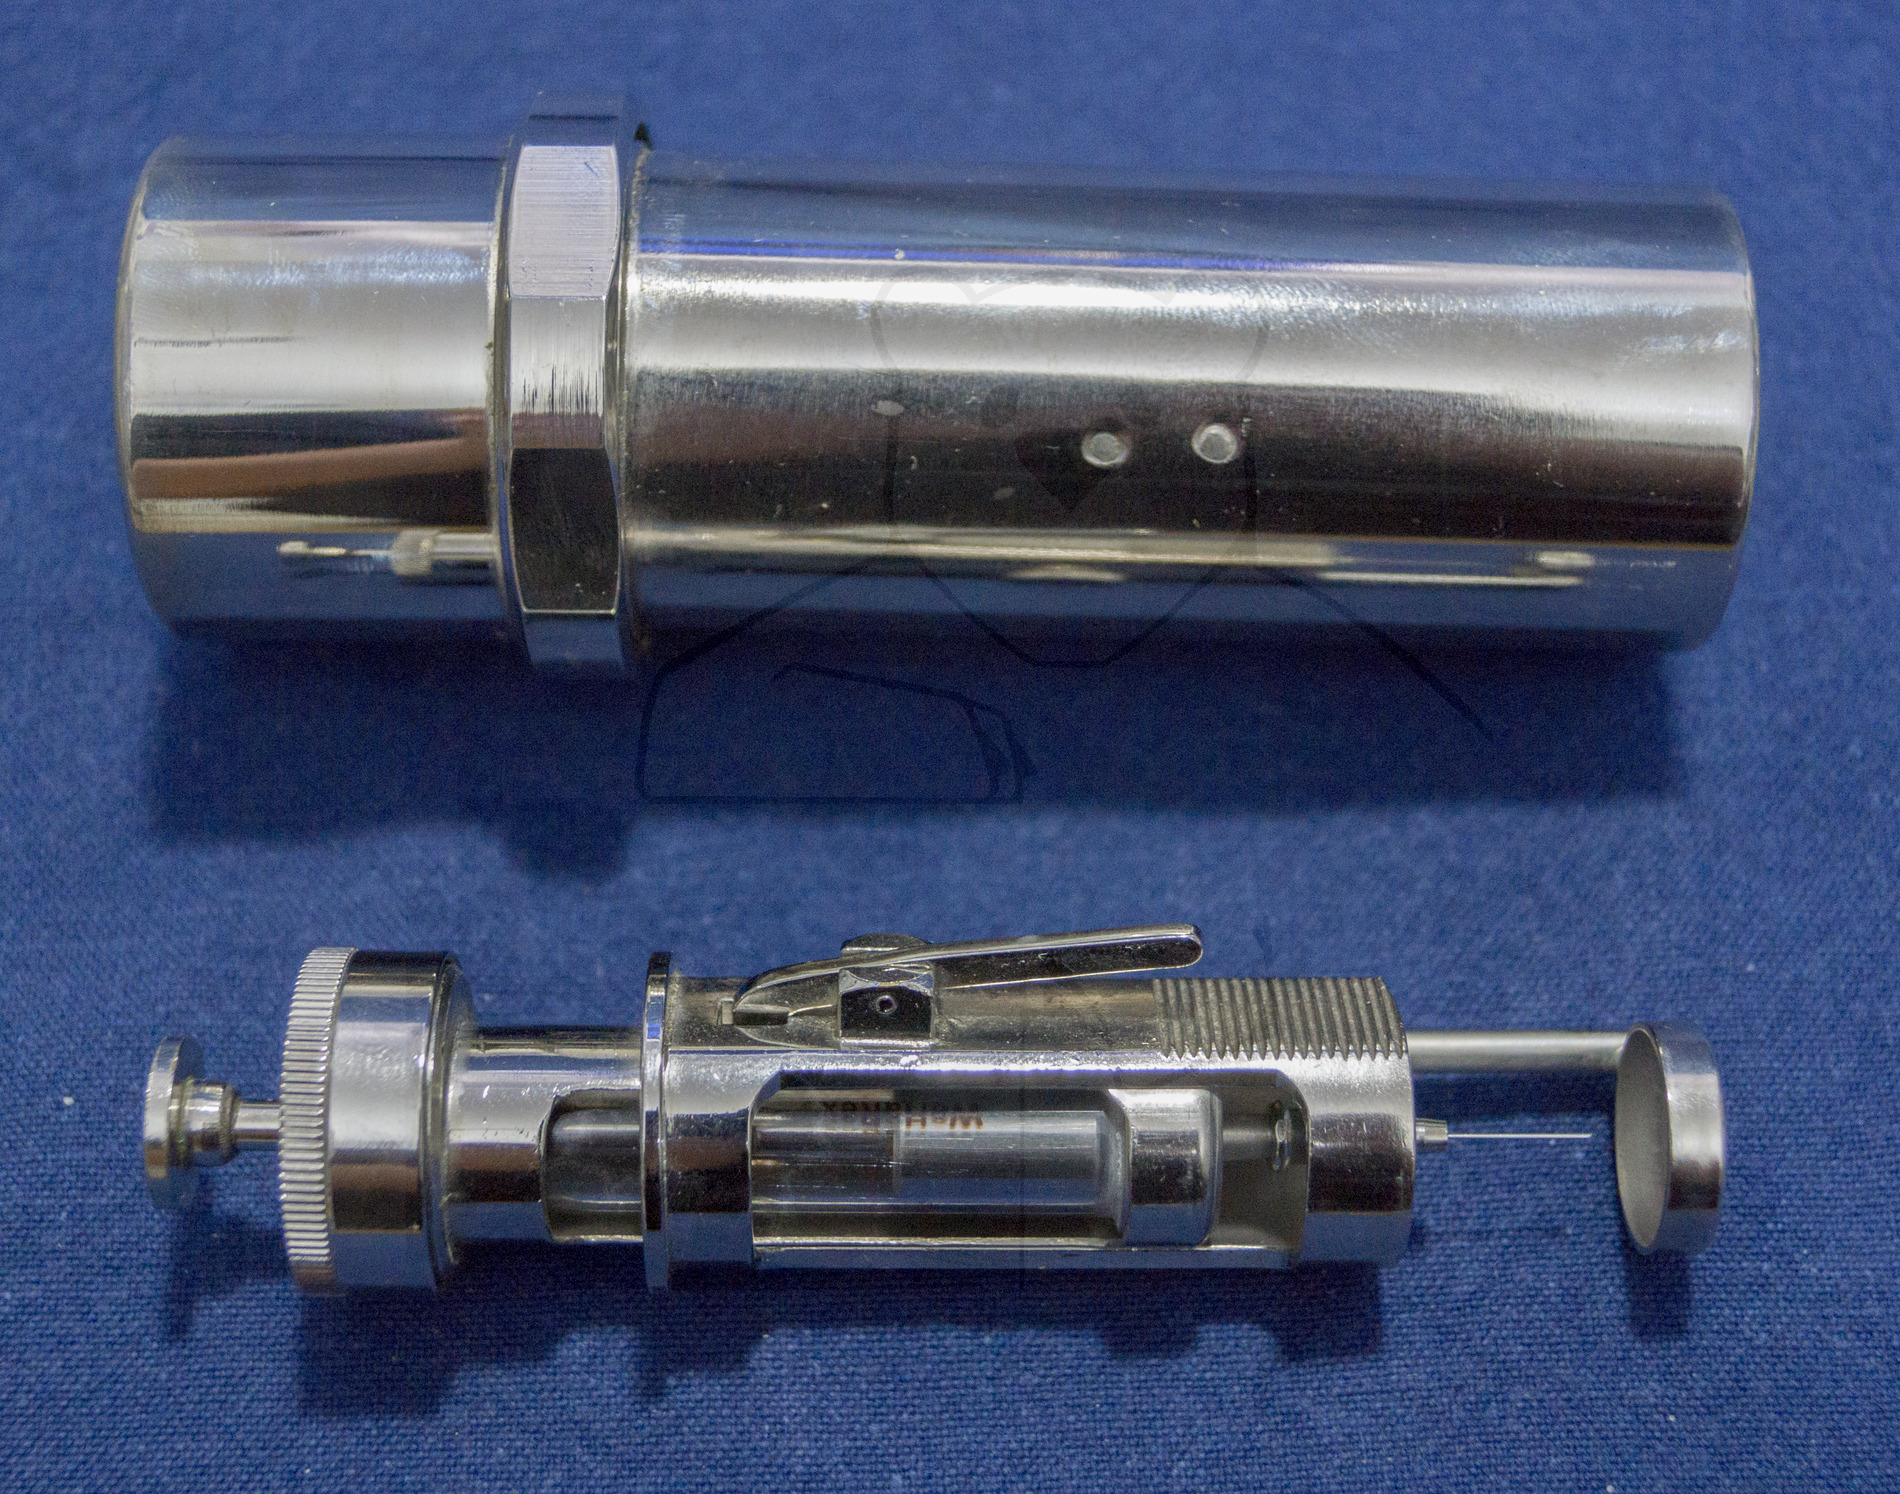 Insulininjektor "Diarapid", 1963'er Jahre, Aufbewahrungsbehälter und Injektor mit eingesetzter Spritze